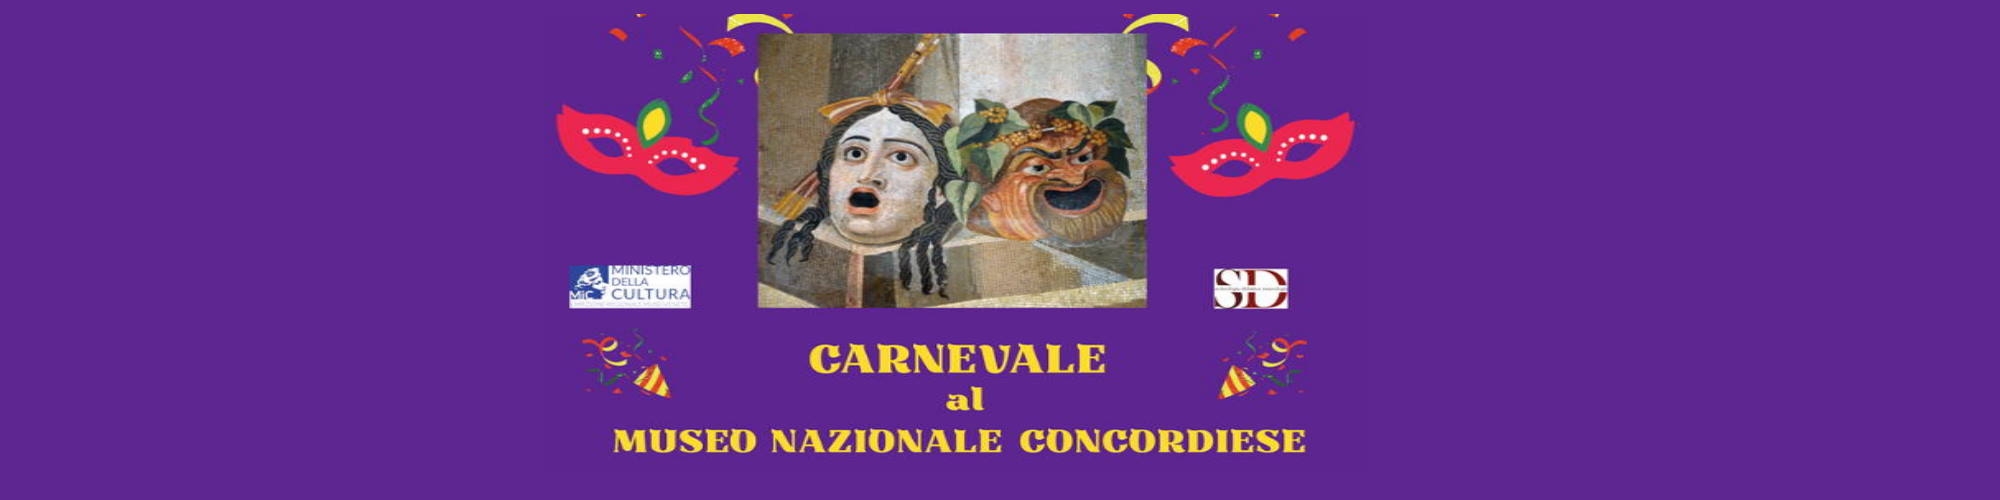 Immagine Carnevale al Museo Nazionale Concordiese -19 febbraio